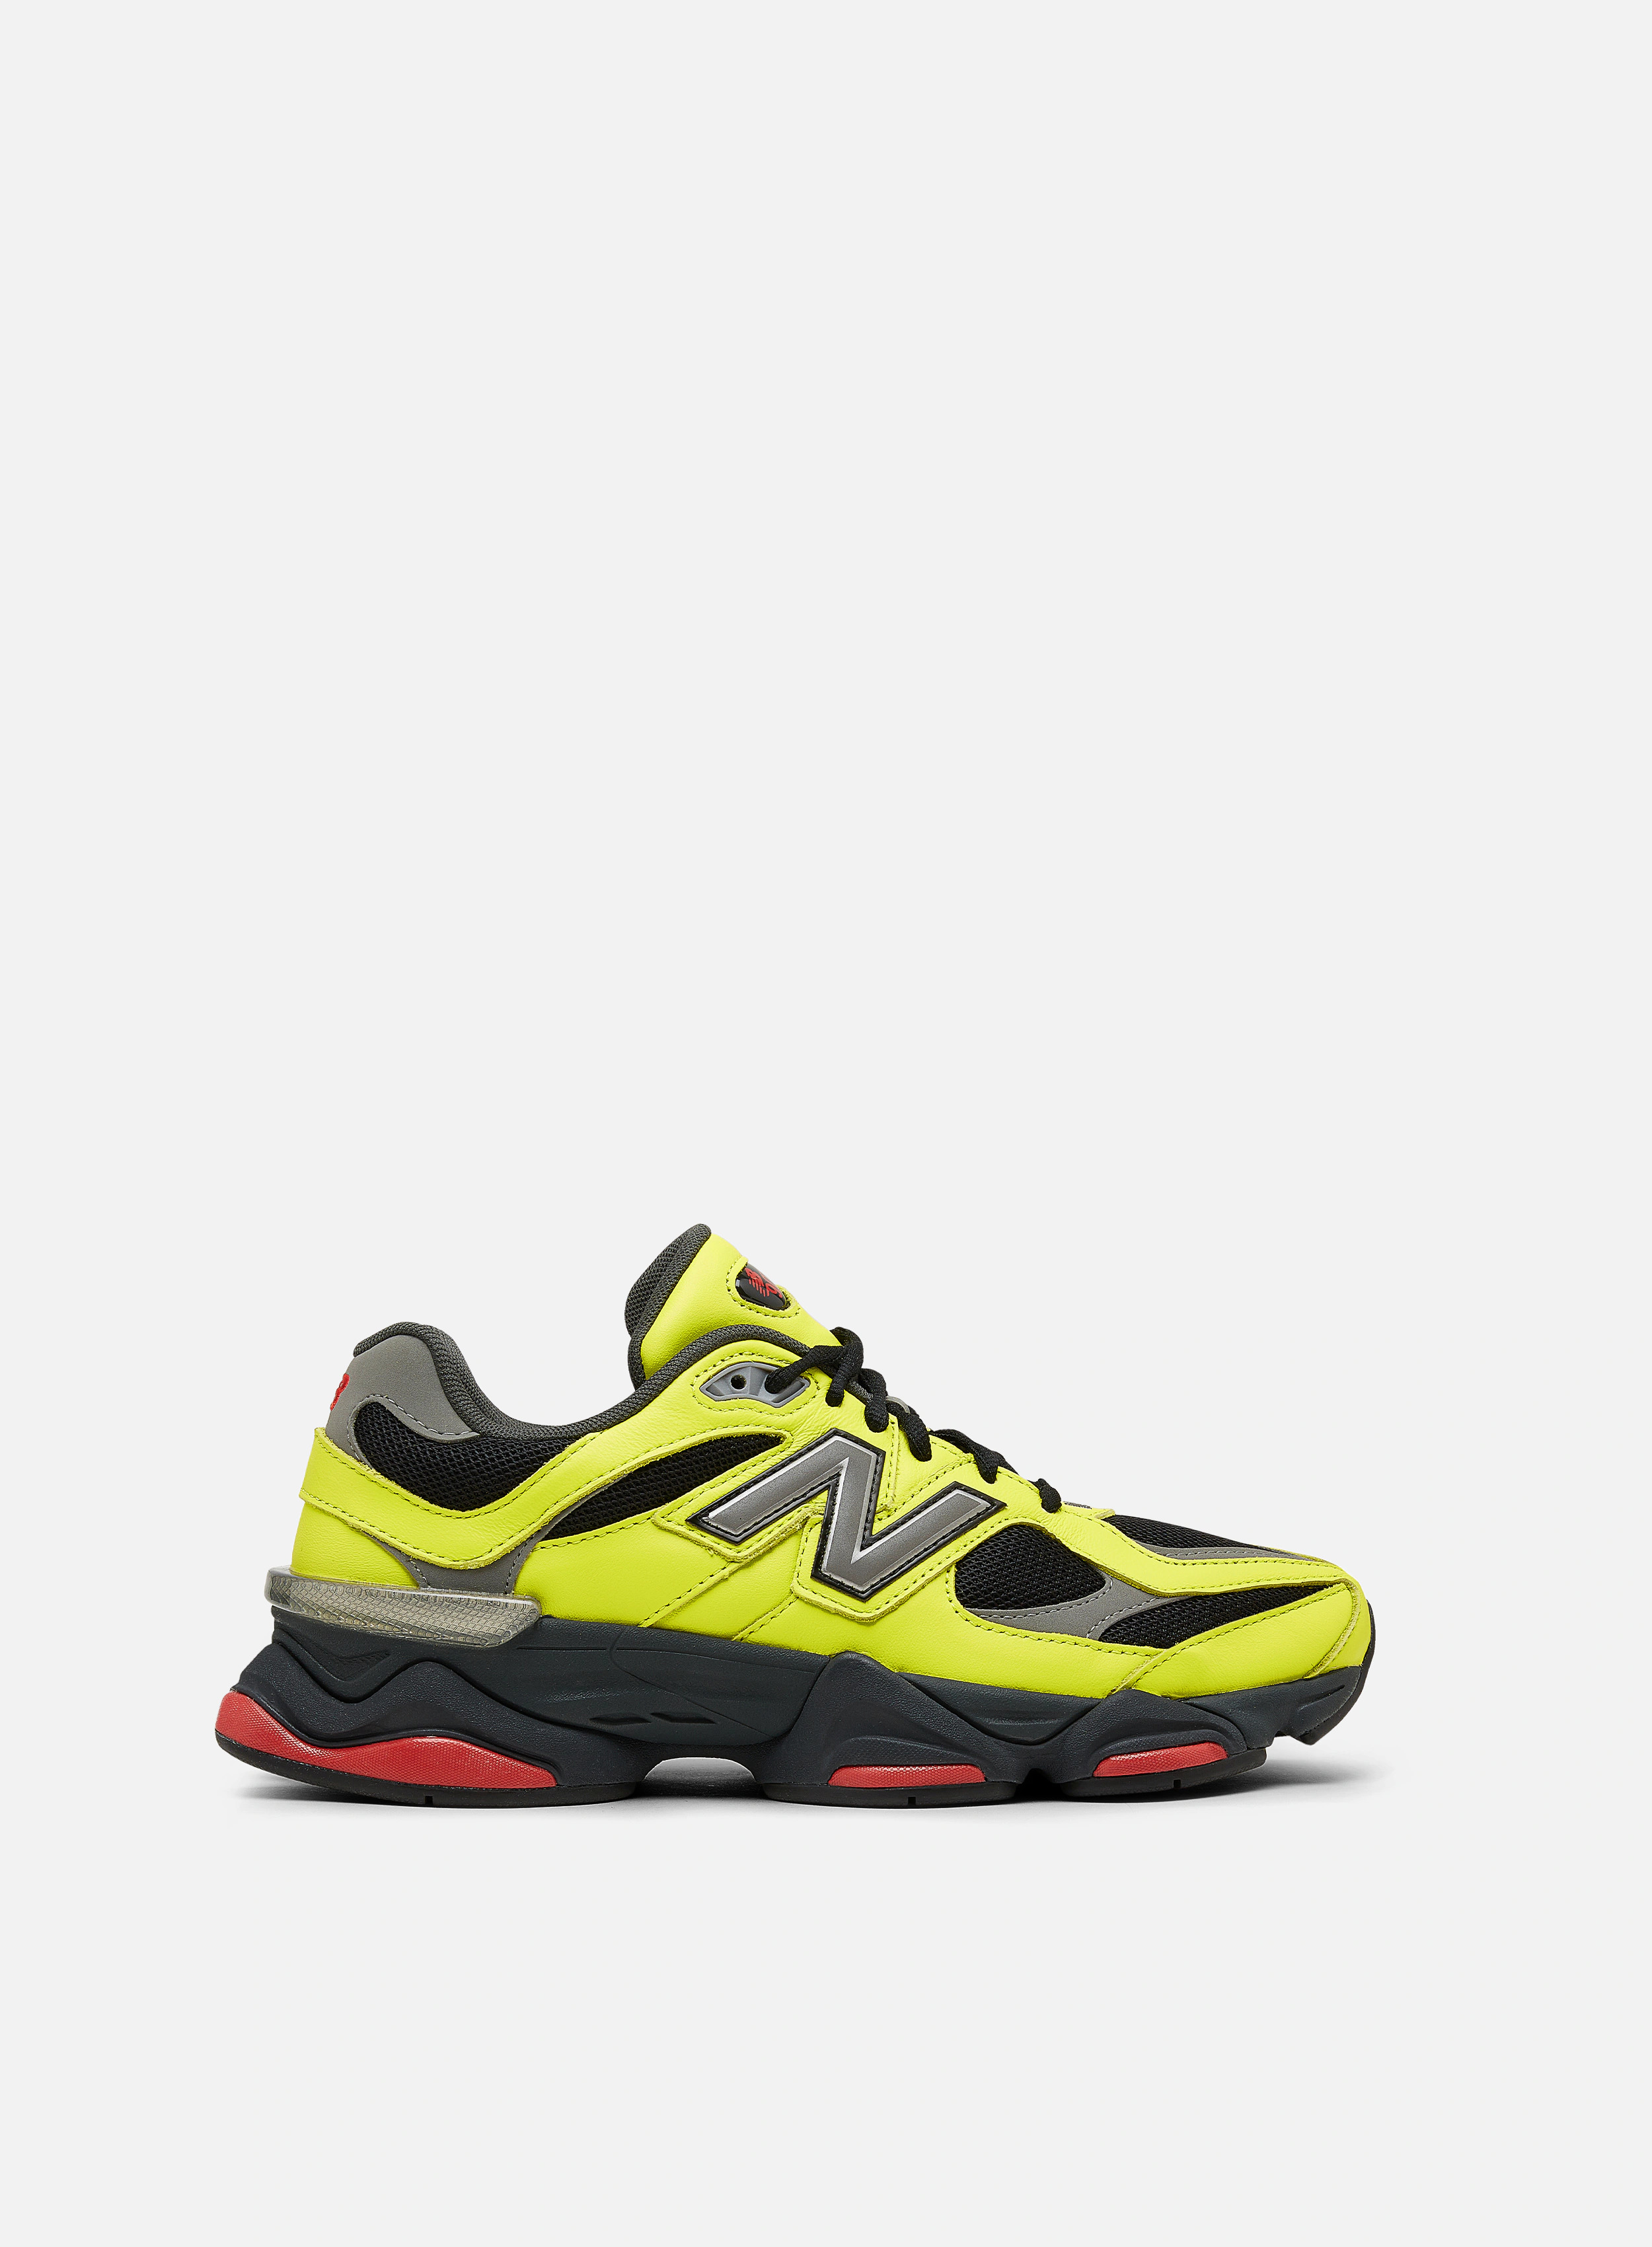 New Balance 9060 Neon Yellow